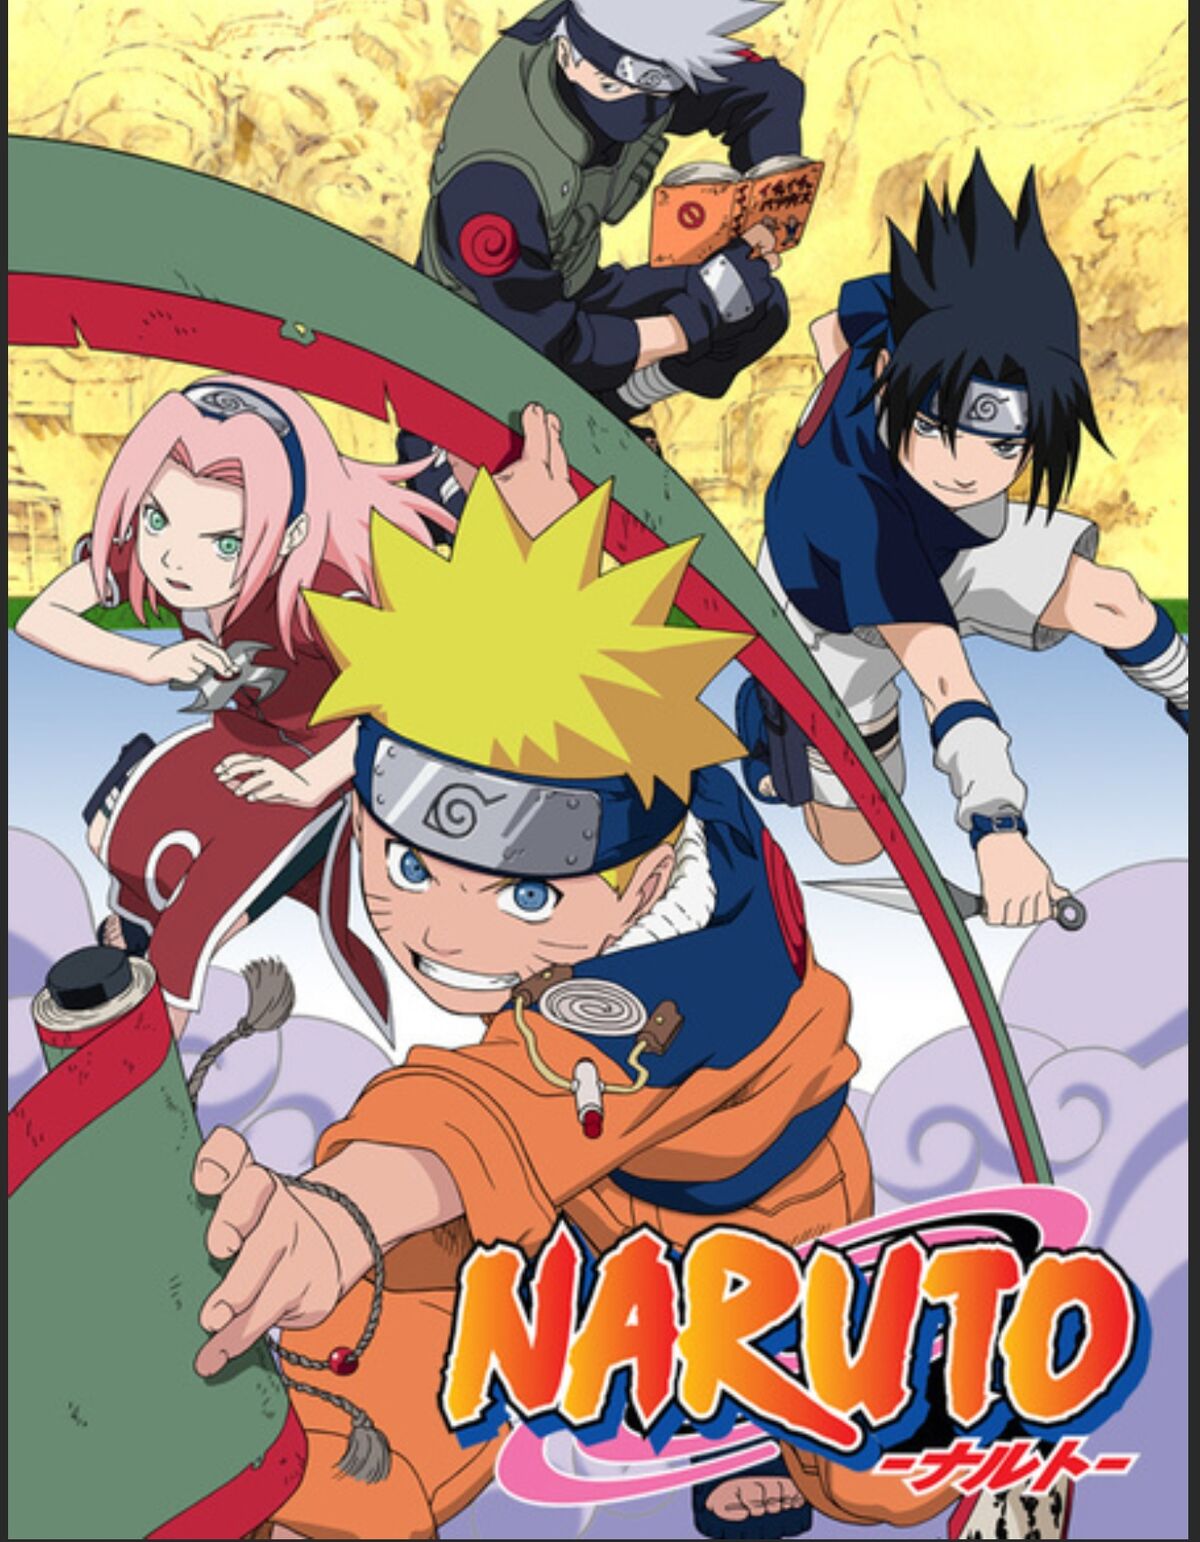 Naruto | Wikia Lồng Tiếng | Fandom